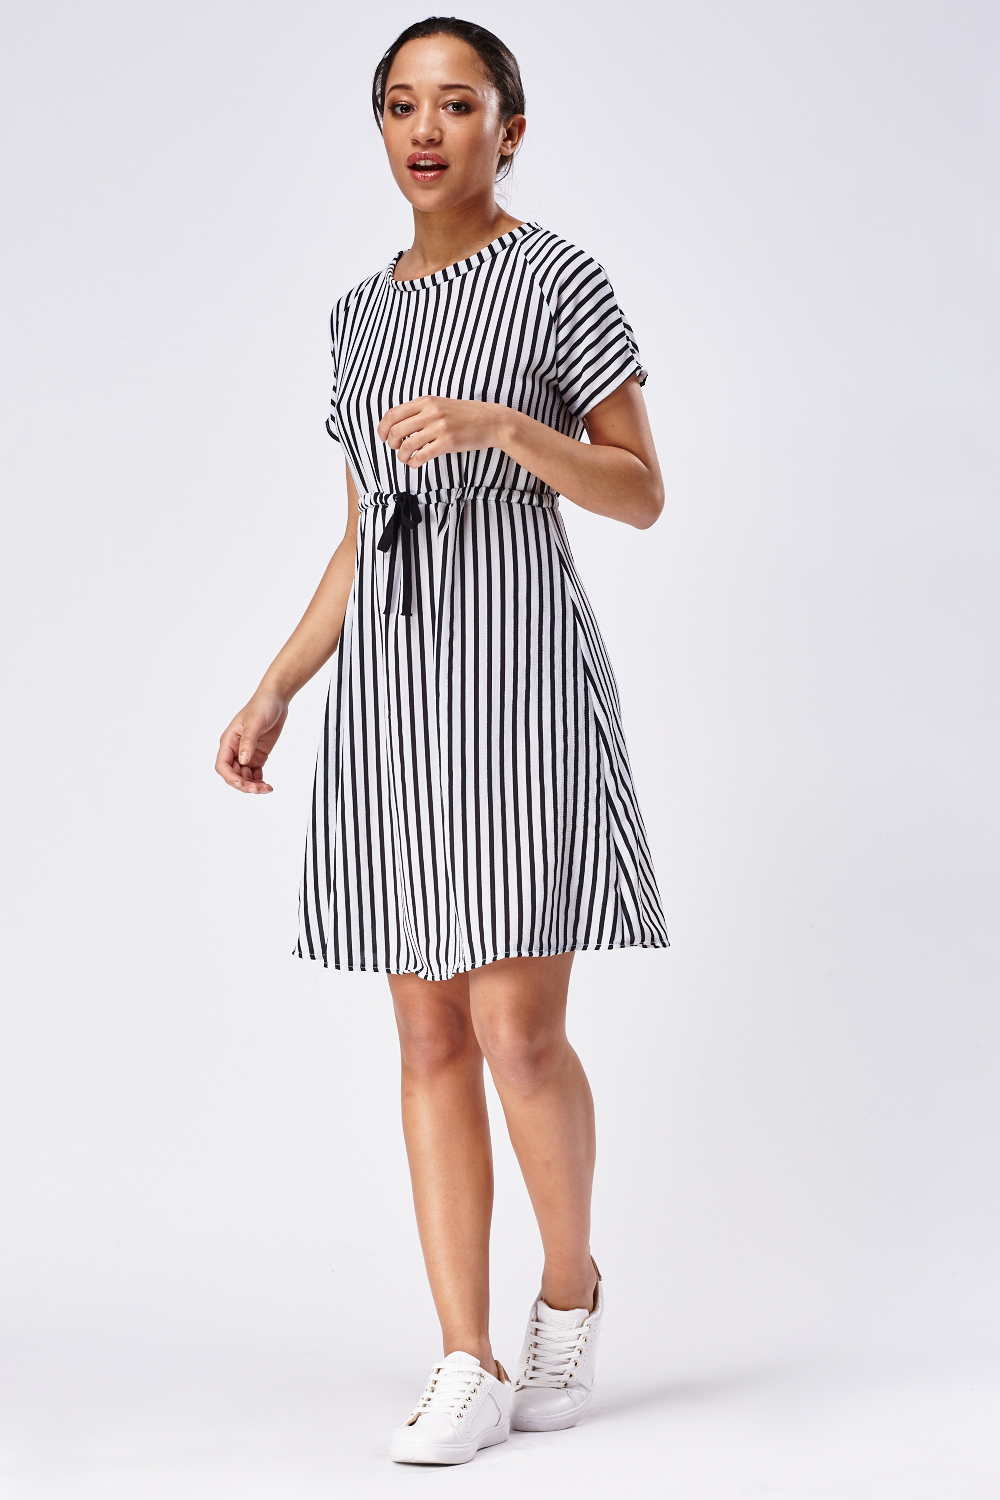 Striped Casual Midi Dress - Just $6